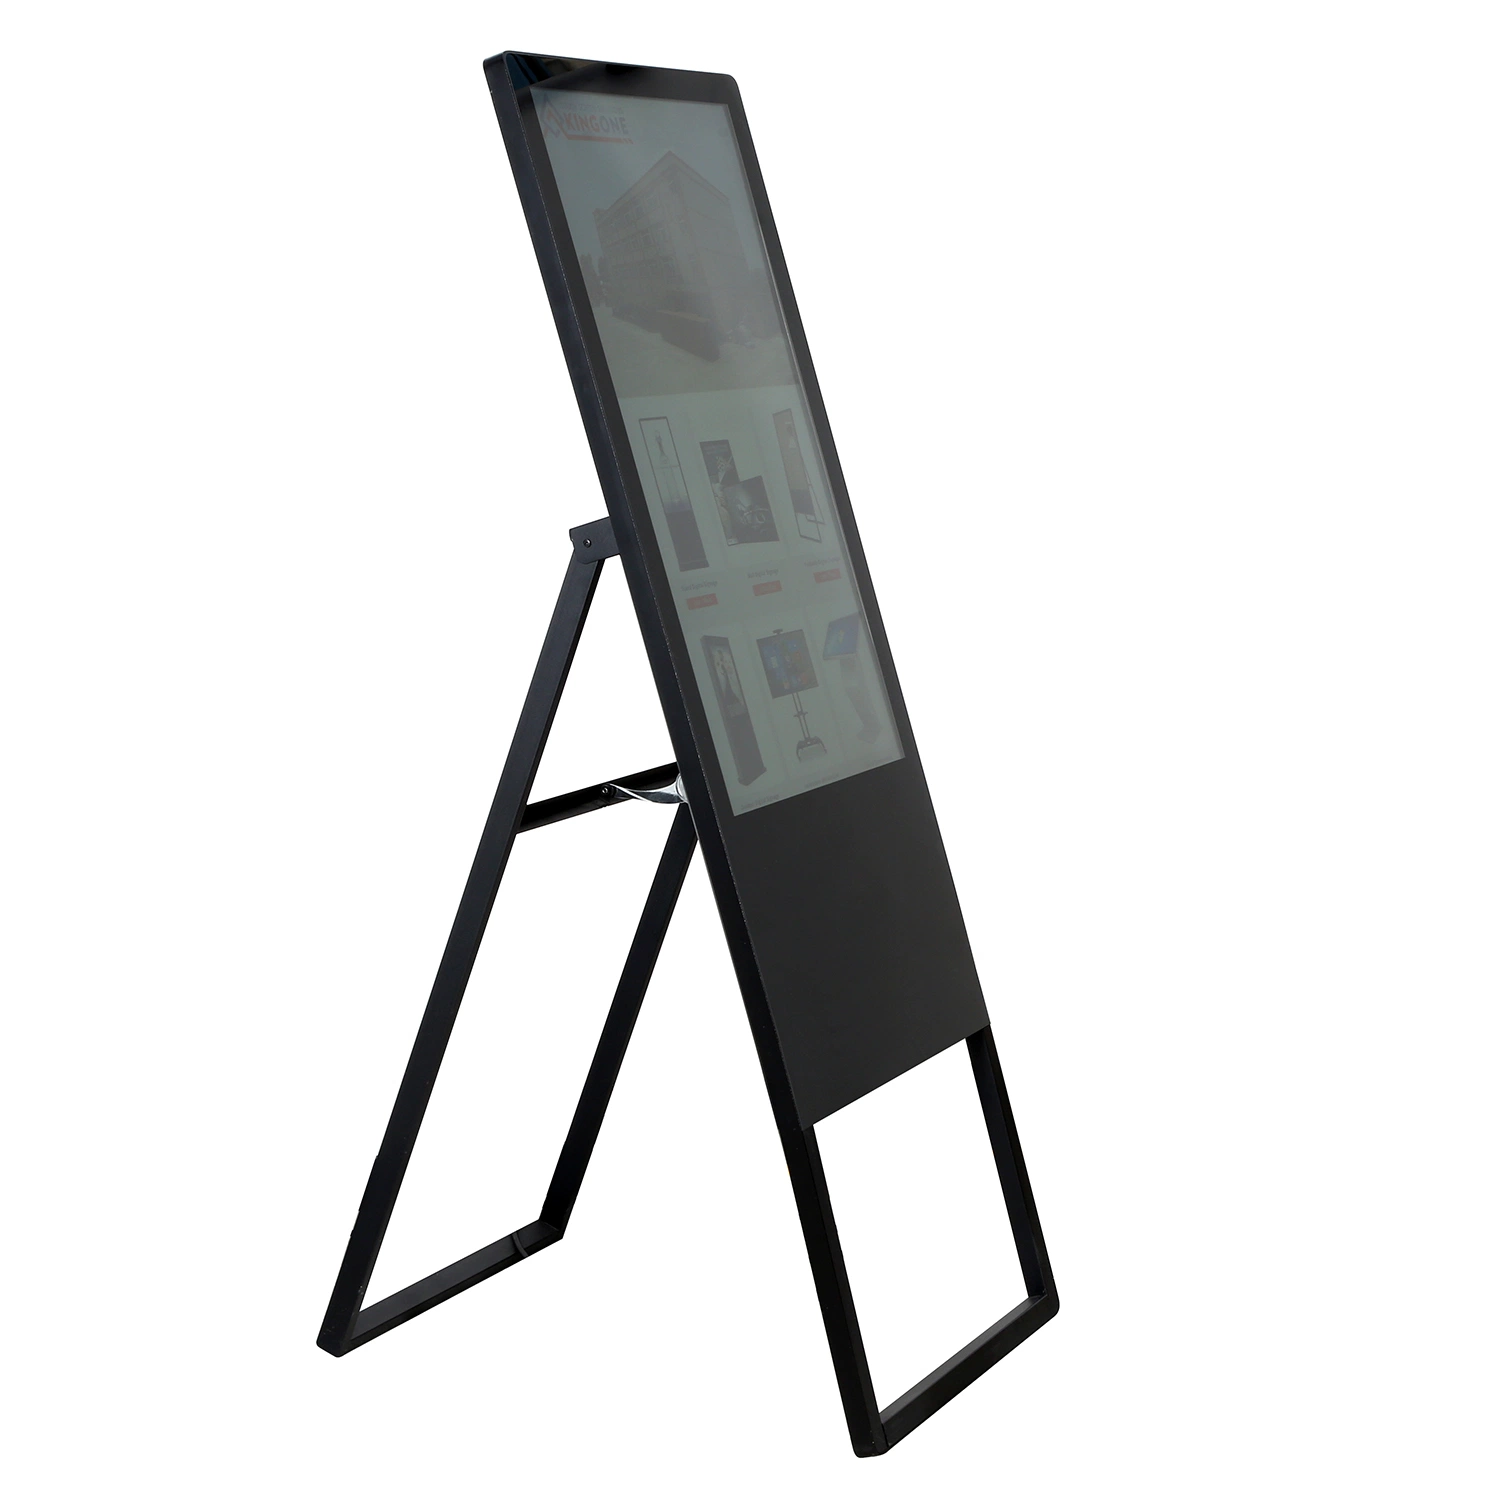 El soporte de suelo Comercial Reproductor Digital Signage Vertical de la pantalla LCD de gran publicidad LCD TV